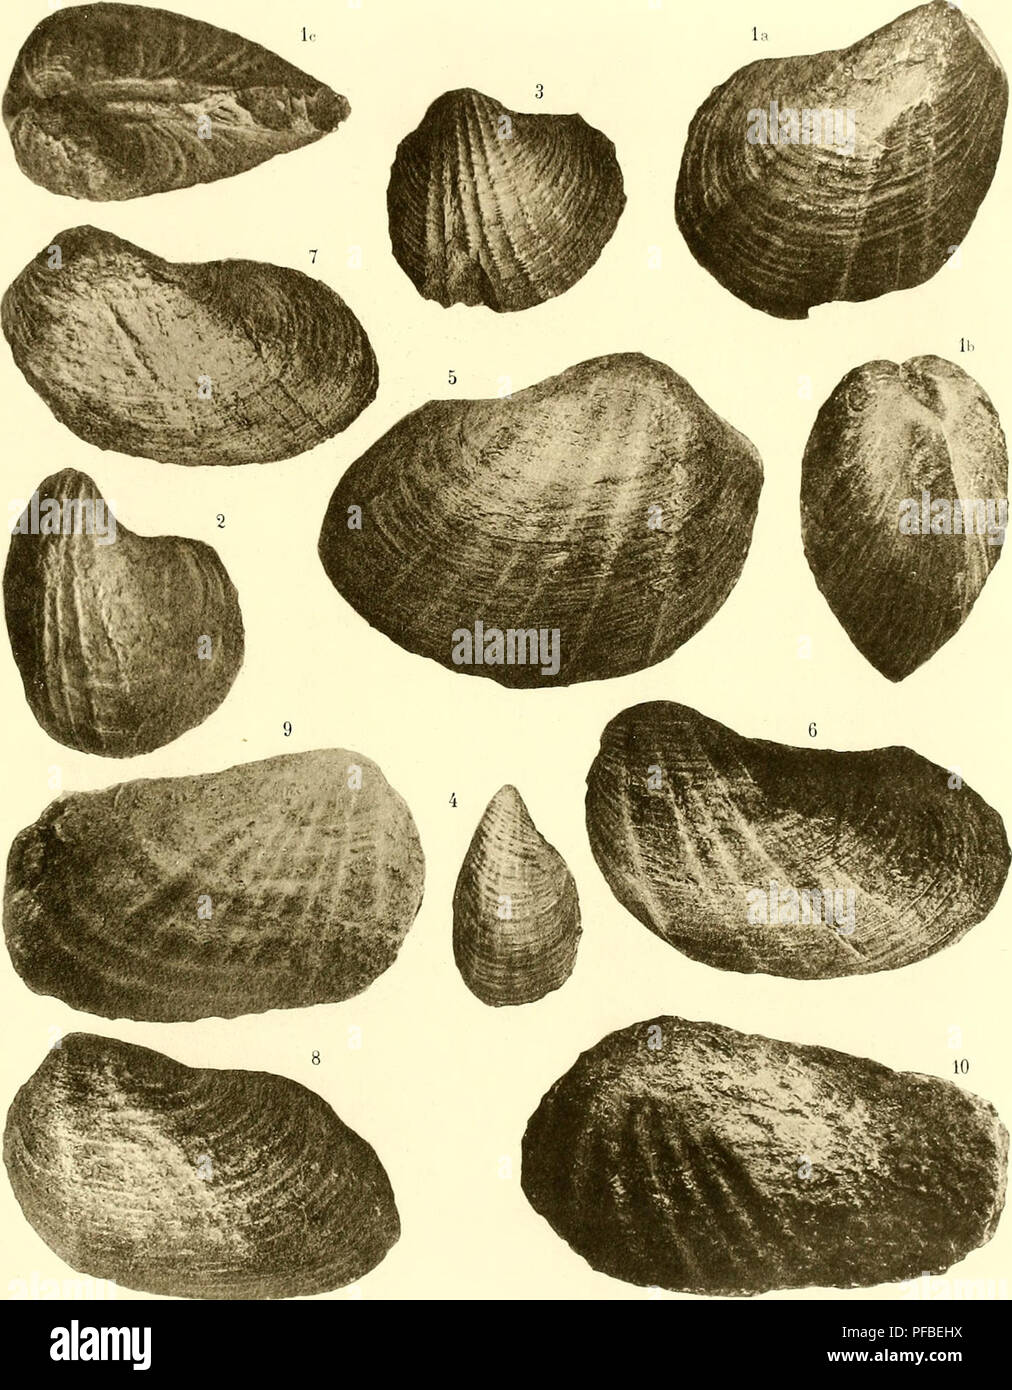 . Beschreibung de la Faune jurassique du Portugal: Mollusques Lamellibranches. FAUNE JUÎl/SSIQUE DU PORTUGAL au (', 'iiti HOFFAT (Mliljranchos. PL//.. cTicf e '^Tl (9,0). È' aiU: o.o^'-é-Otc-t^:. S.? cxp - Seele.. Bitte beachten Sie, dass diese Bilder sind von der gescannten Seite Bilder, die digital für die Lesbarkeit verbessert haben mögen - Färbung und Aussehen dieser Abbildungen können nicht perfekt dem Original ähneln. extrahiert. Choffat, Paul, 1849 -. Lisbonne. Imprimerie de l'Académie royale des sciences Stockfoto